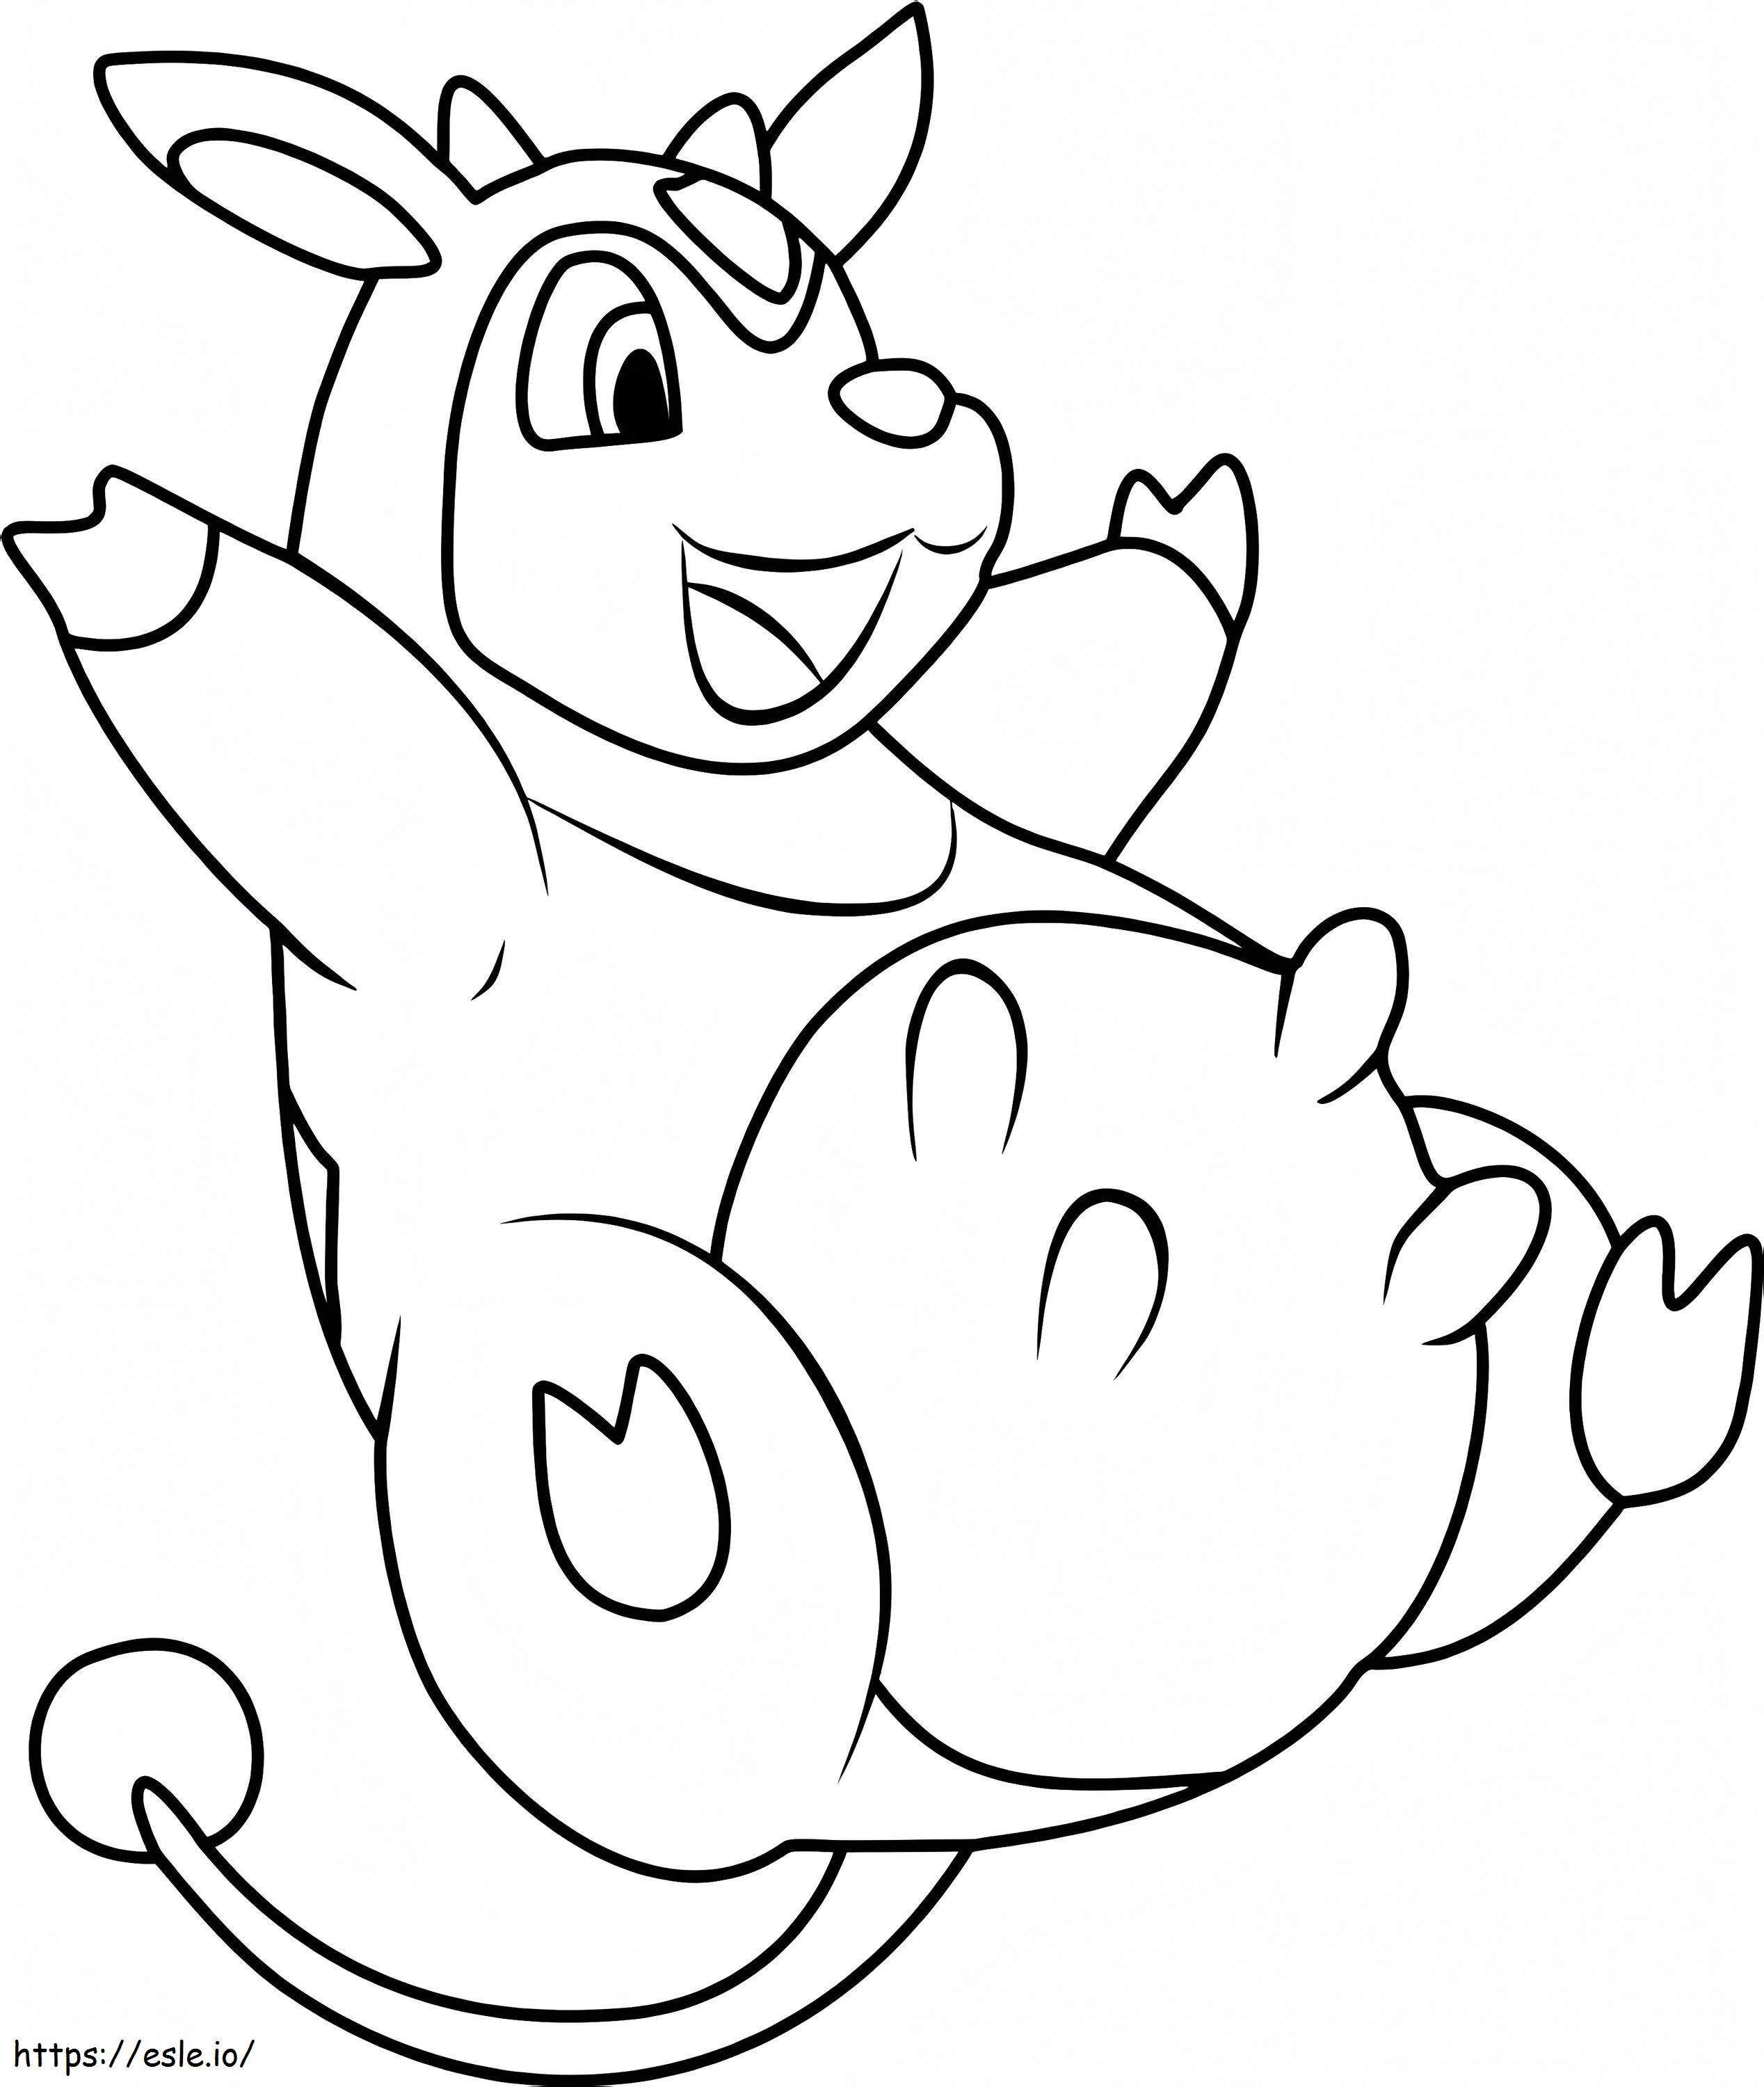 Coloriage Pokemon Miltank à imprimer dessin